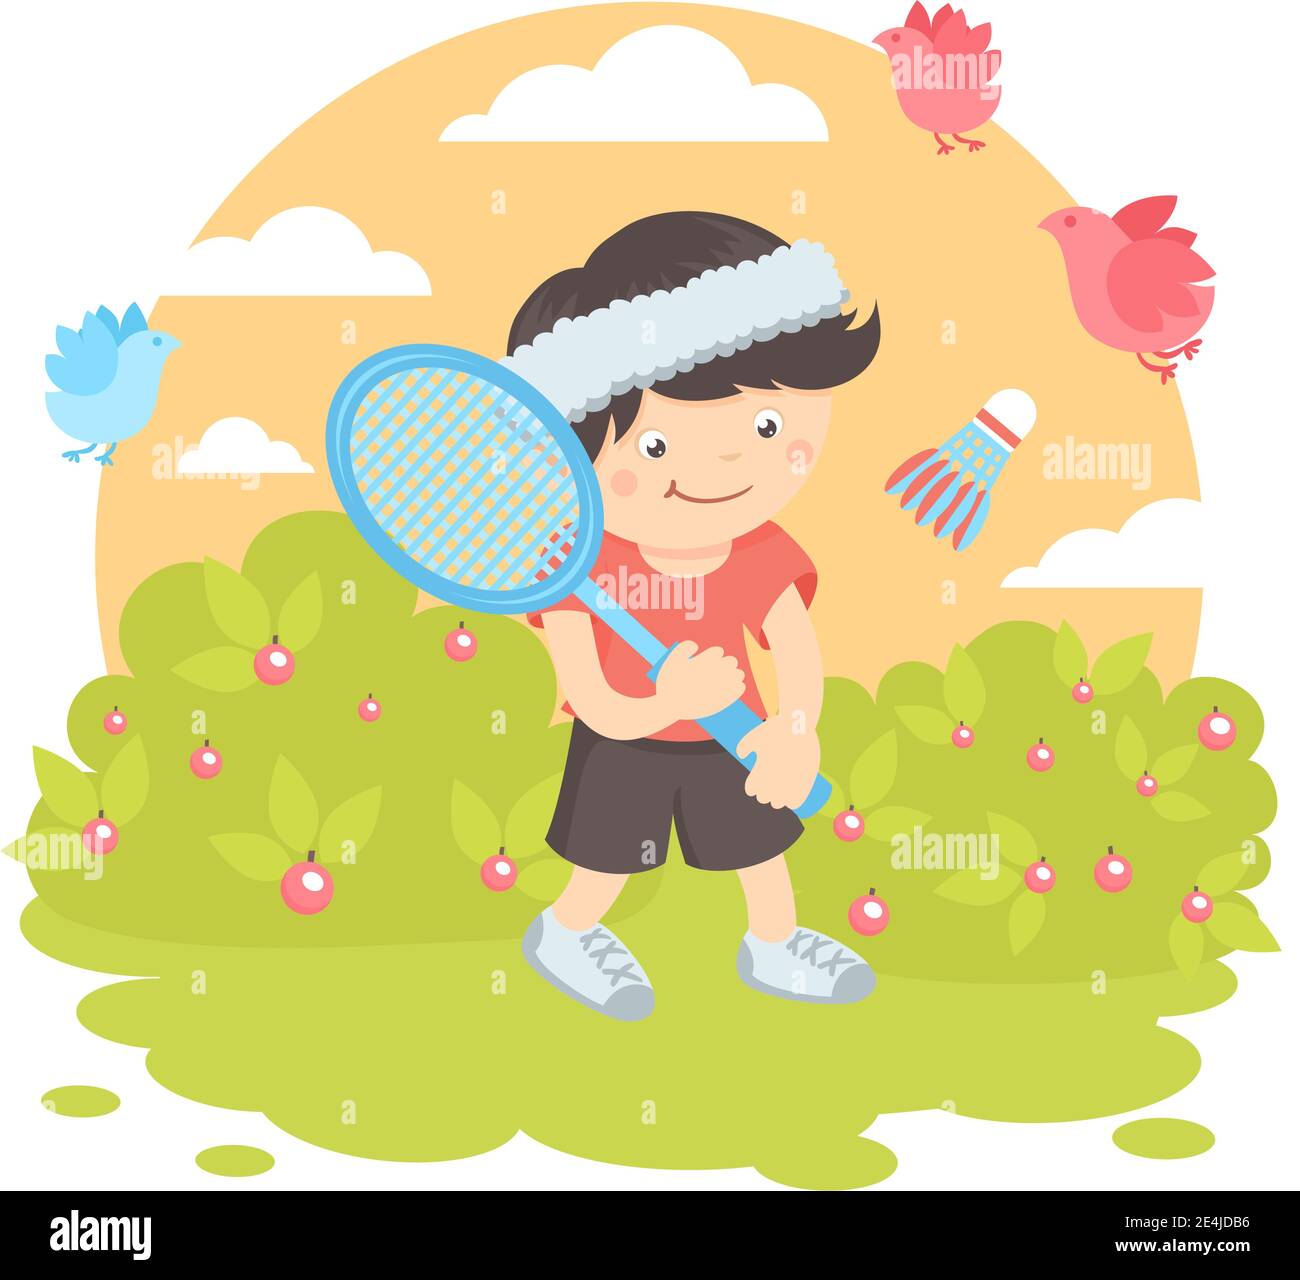 Junge Kind mit Sport-Schläger spielen Badminton auf dem Rasen mit Natur im Freien Hintergrund Vektor Illustration. Stock Vektor